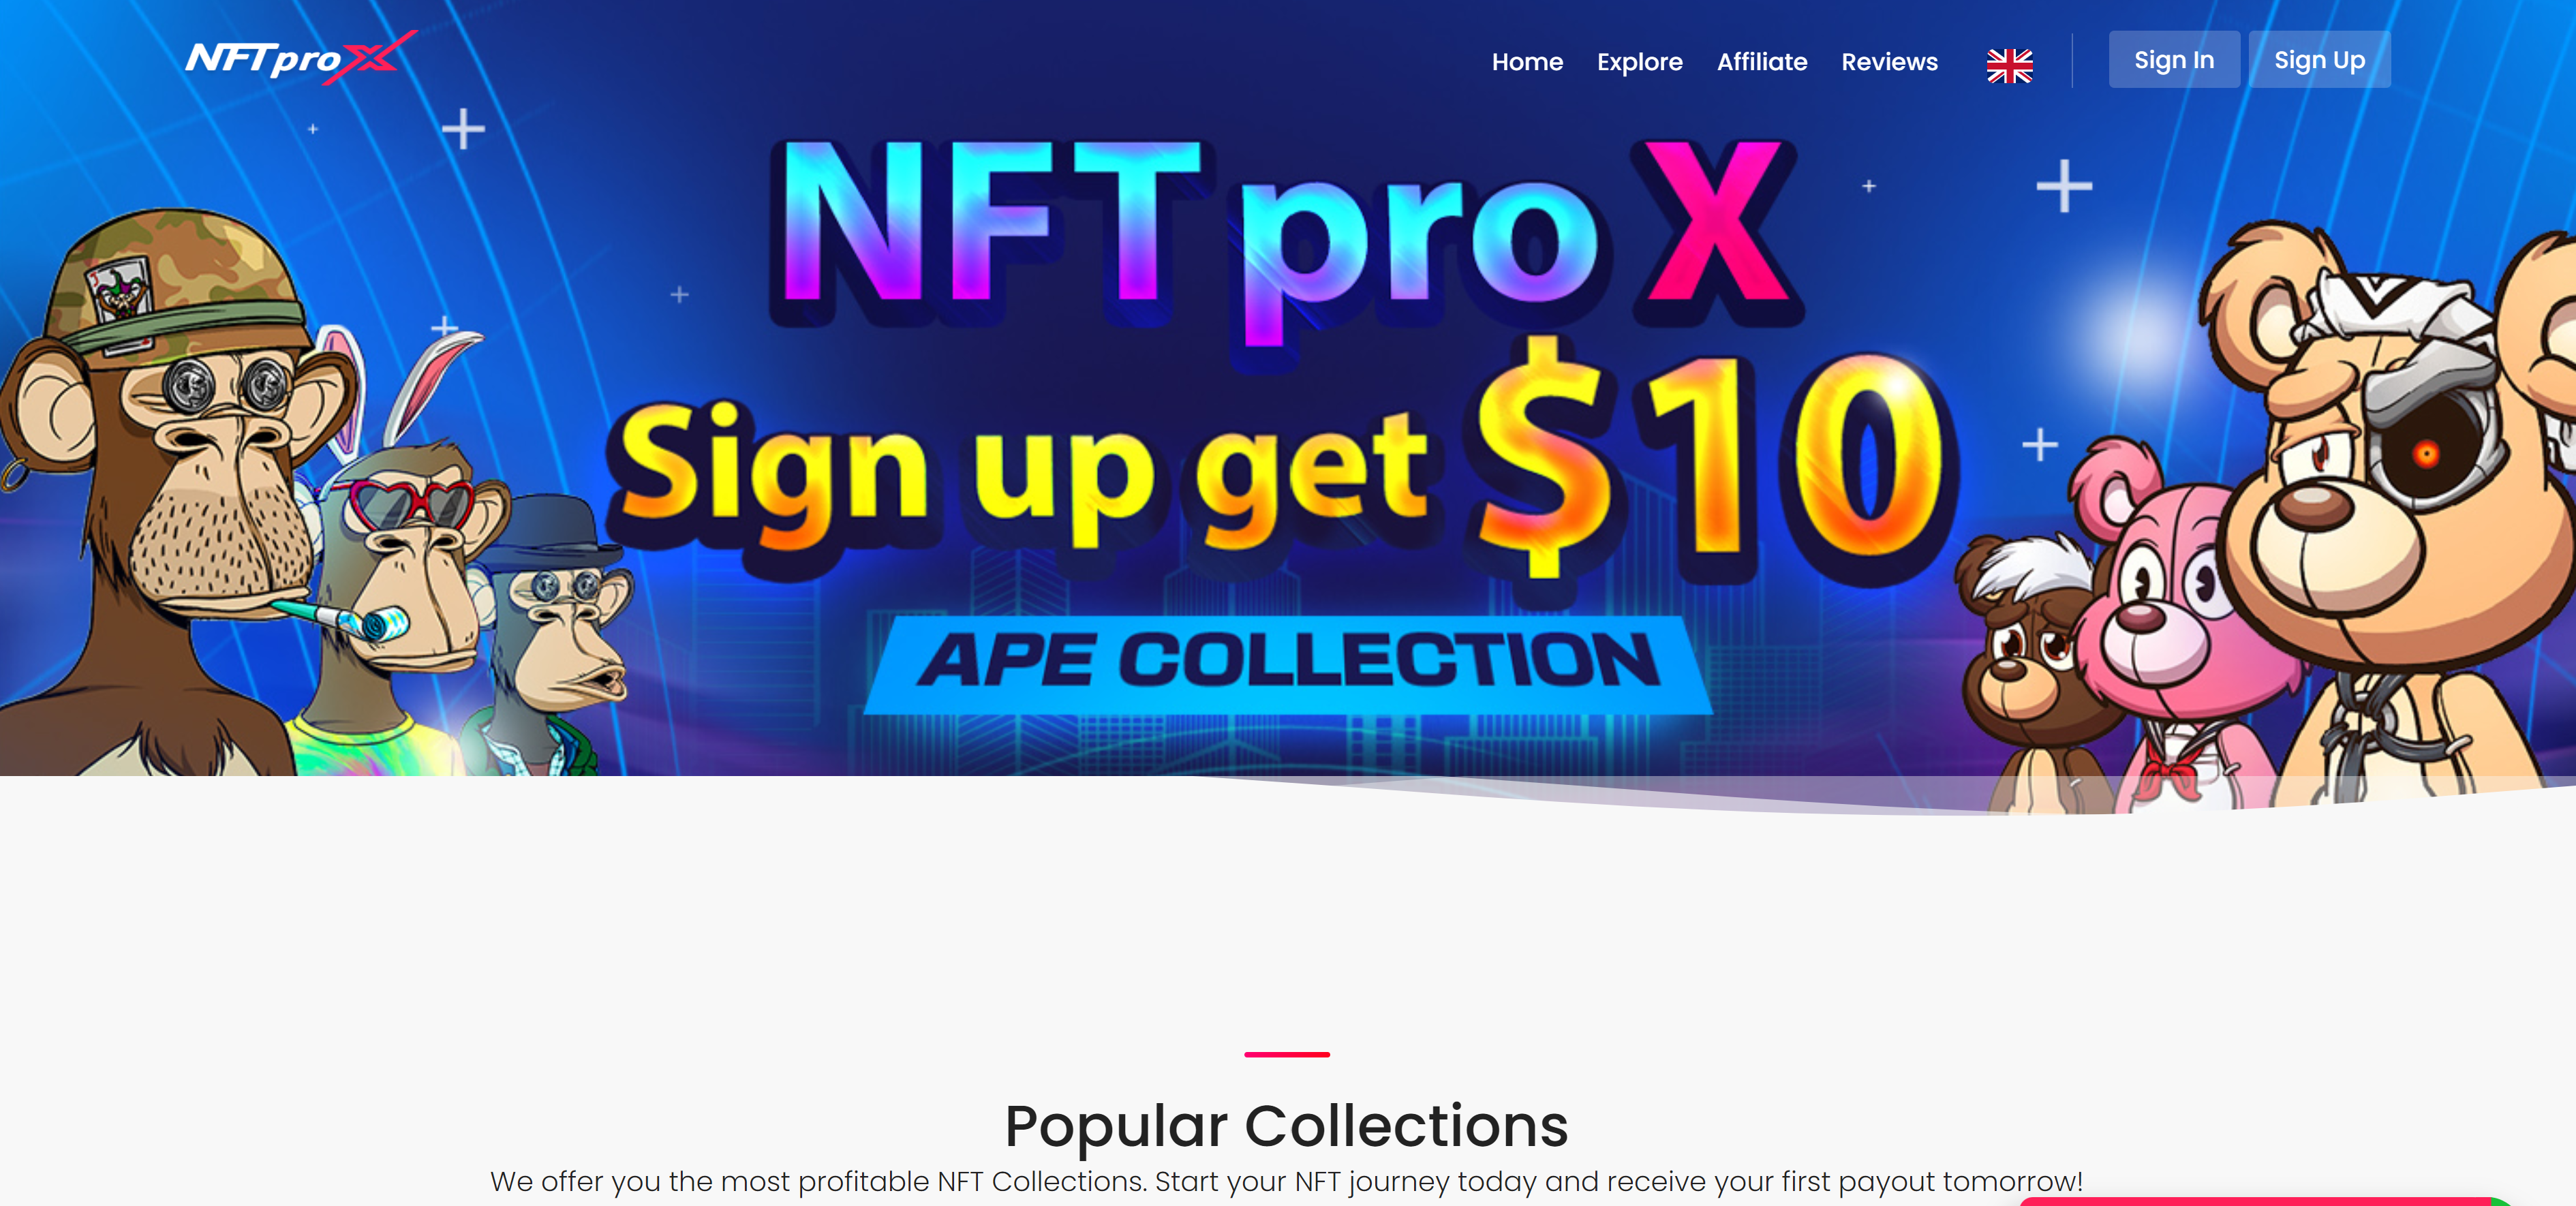 Recover stolen NFT from NFTproX